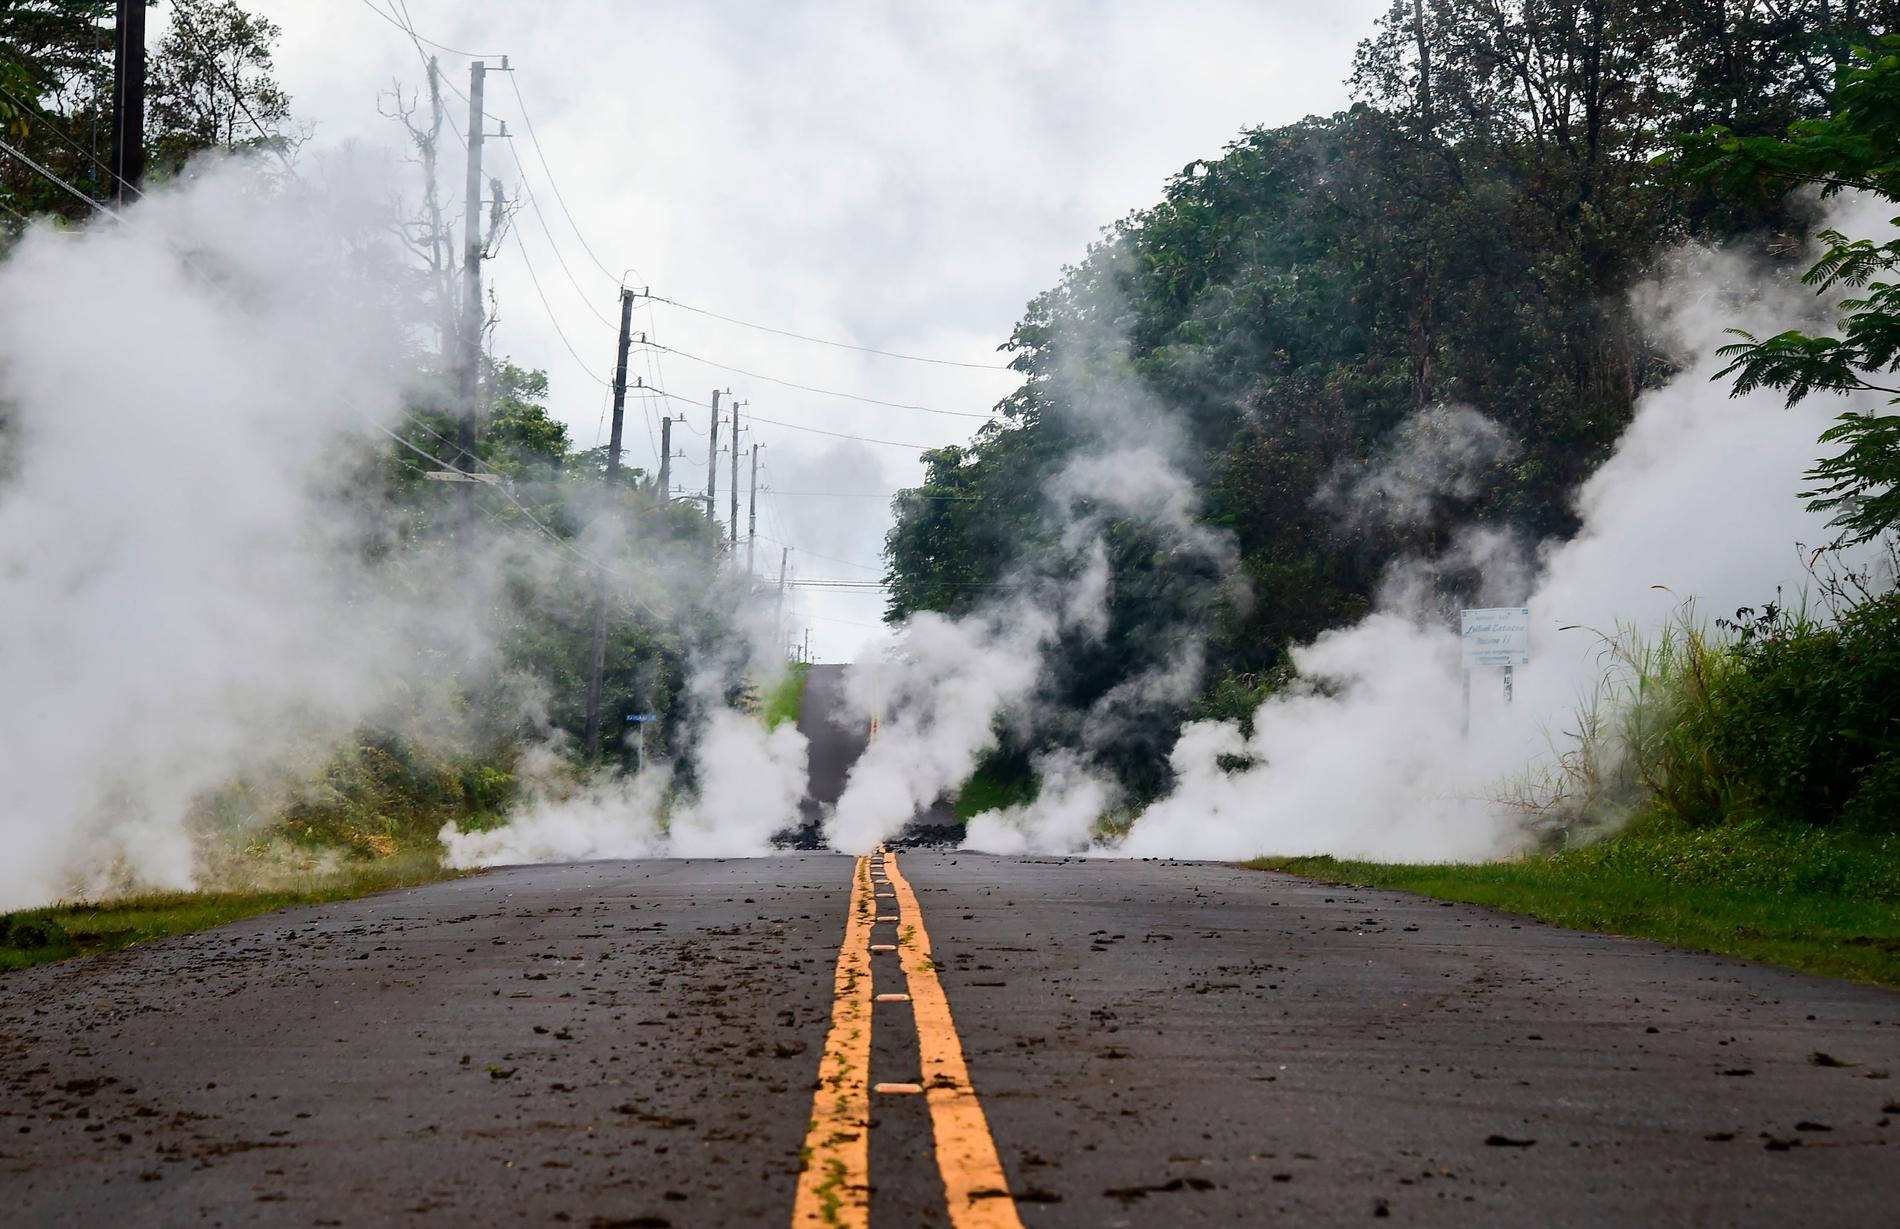 Just nu är antalet utbrott runt om på Hawaii uppe i sex stycken, säger Anna Jakobsson.